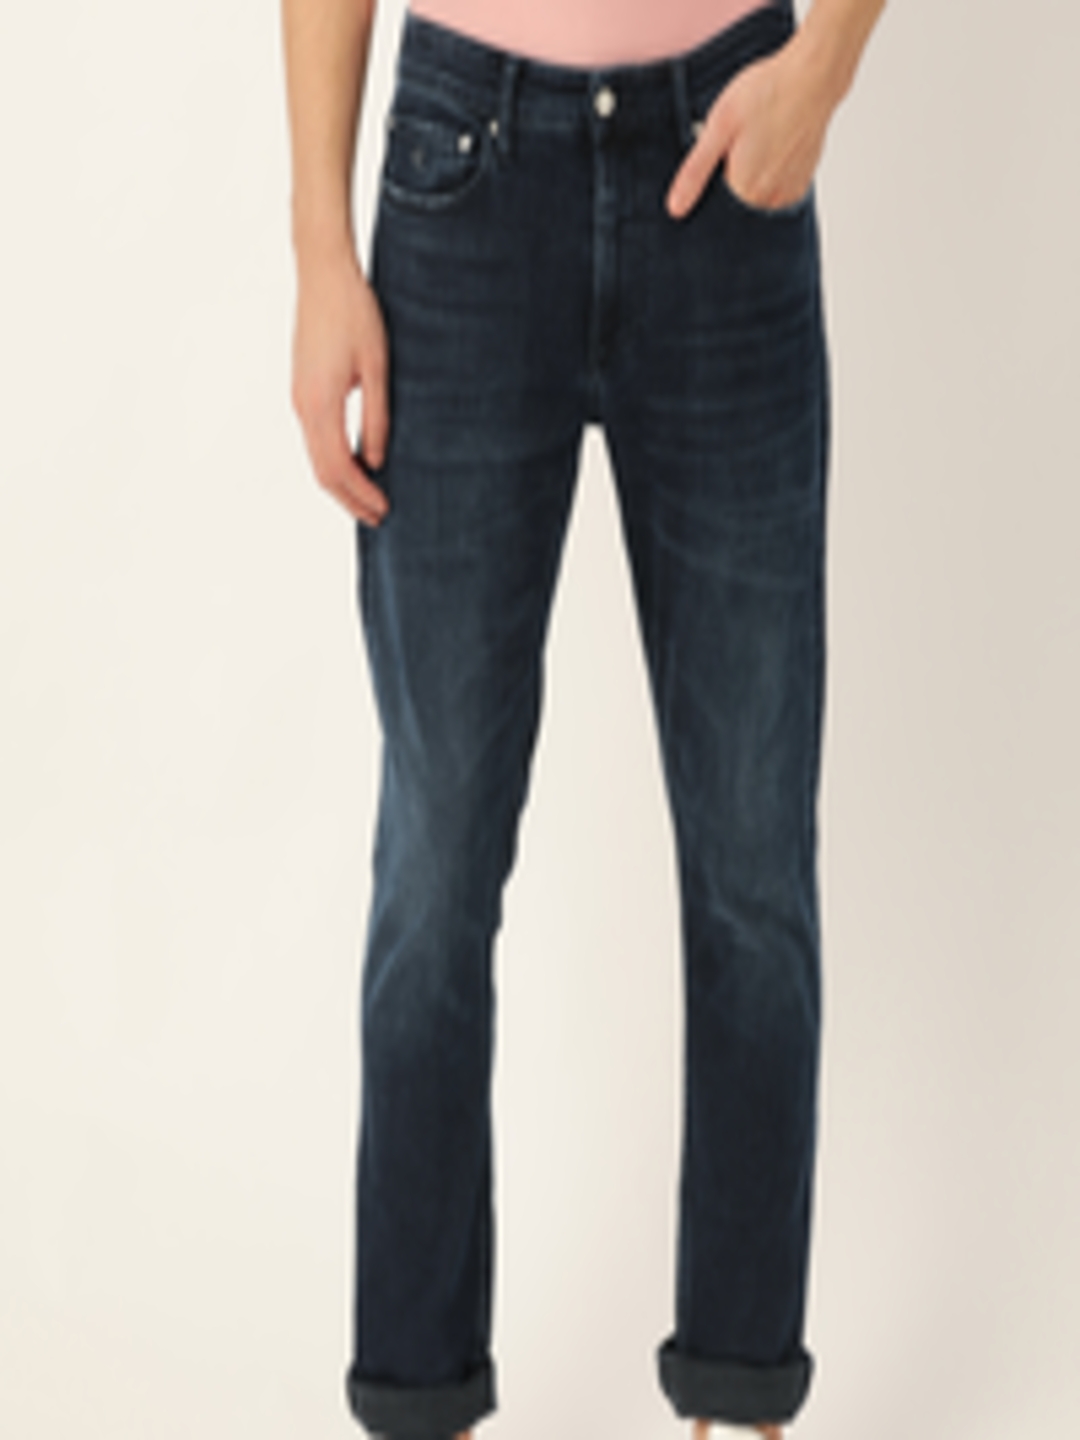 Buy Calvin Klein Jeans Men Navy Blue 026 Slim Fit Mid Rise Clean Look ...